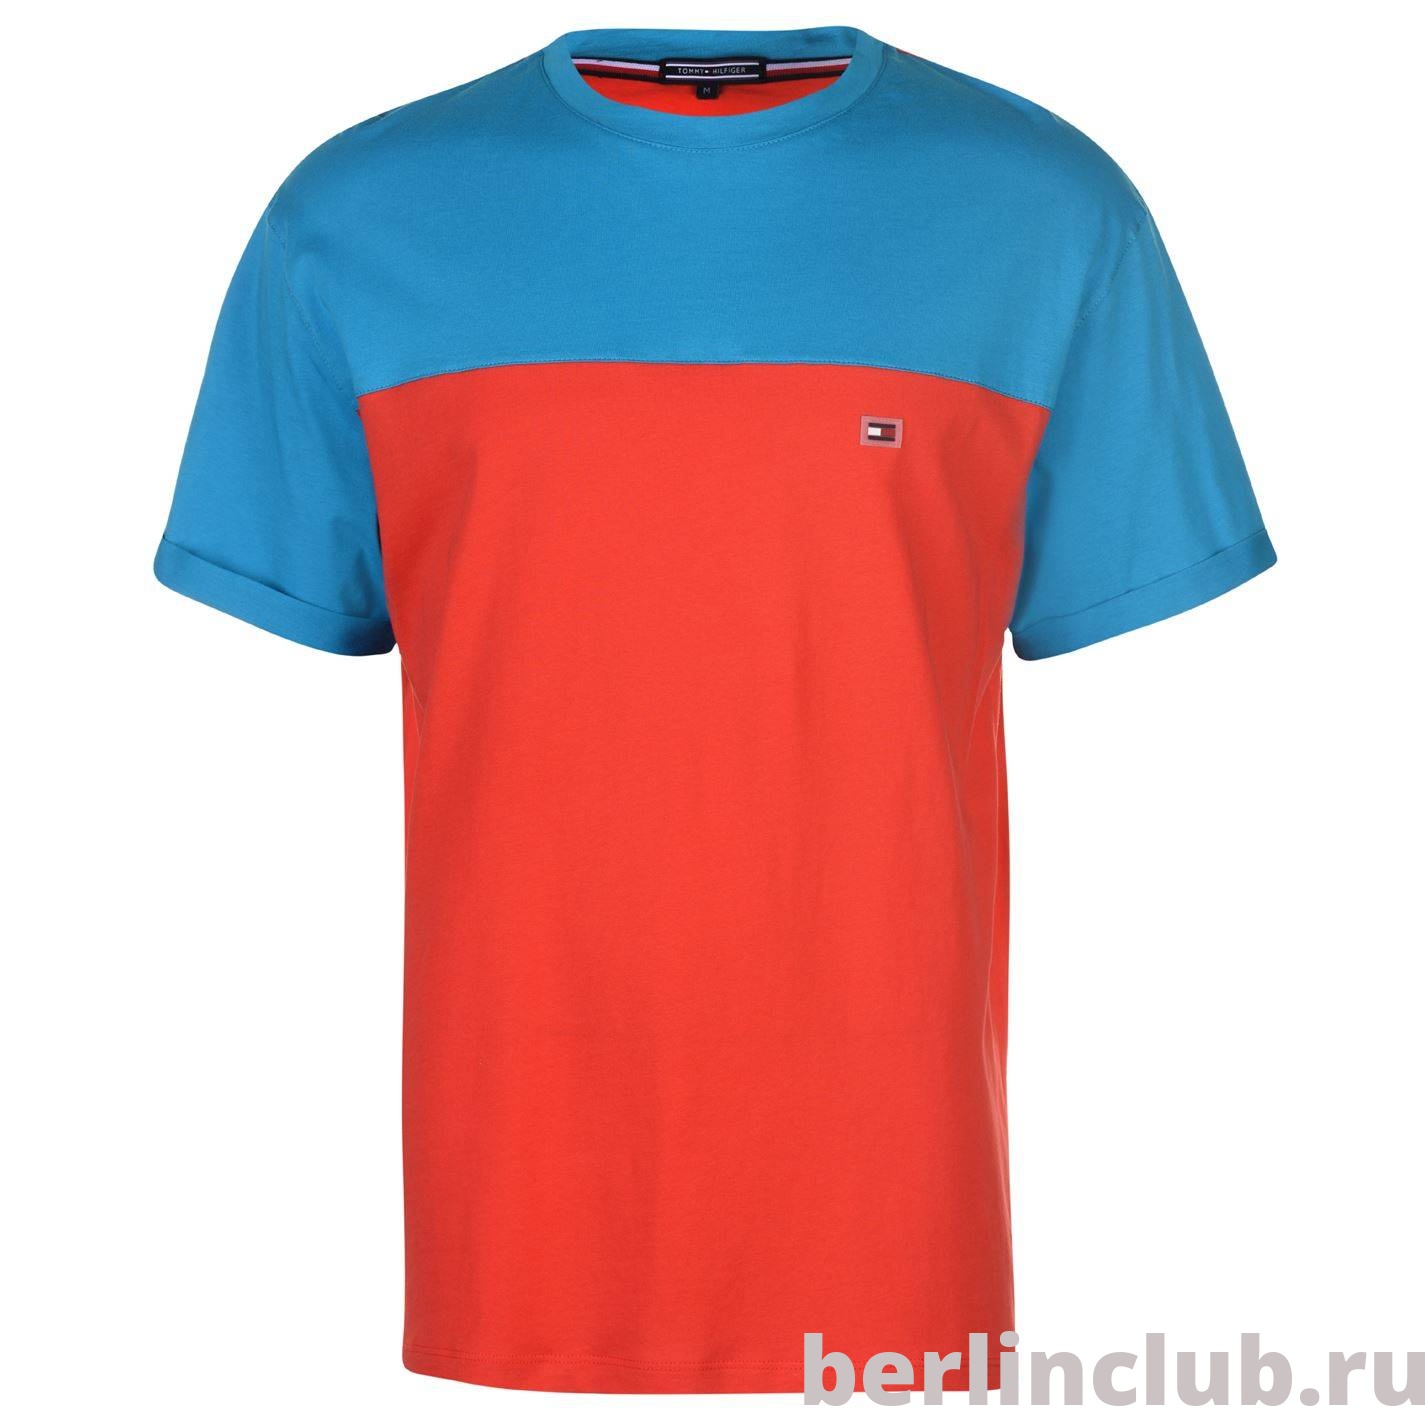 Мужская футболка Tommy Hilfiger колорблок красный-голубой - купить с доставкой по России, оплата при получении